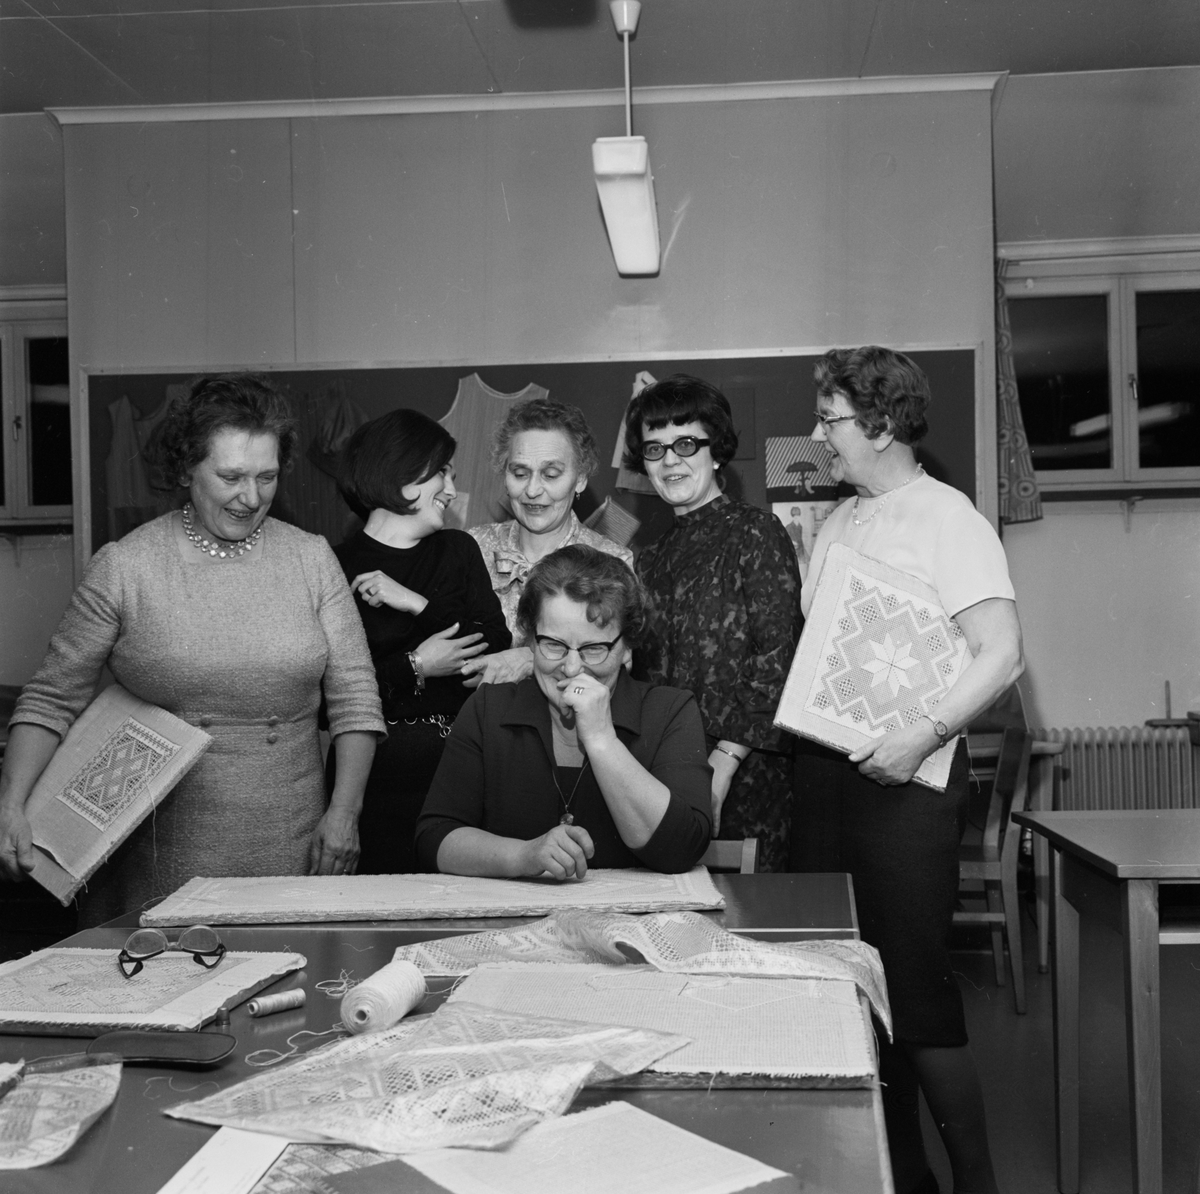 "Näversöm roligt hobbyarbete" - textillärare Ingela Olofsson med kursdeltagare i ABF:s studiecirkel, Tierp, Uppland mars 1968